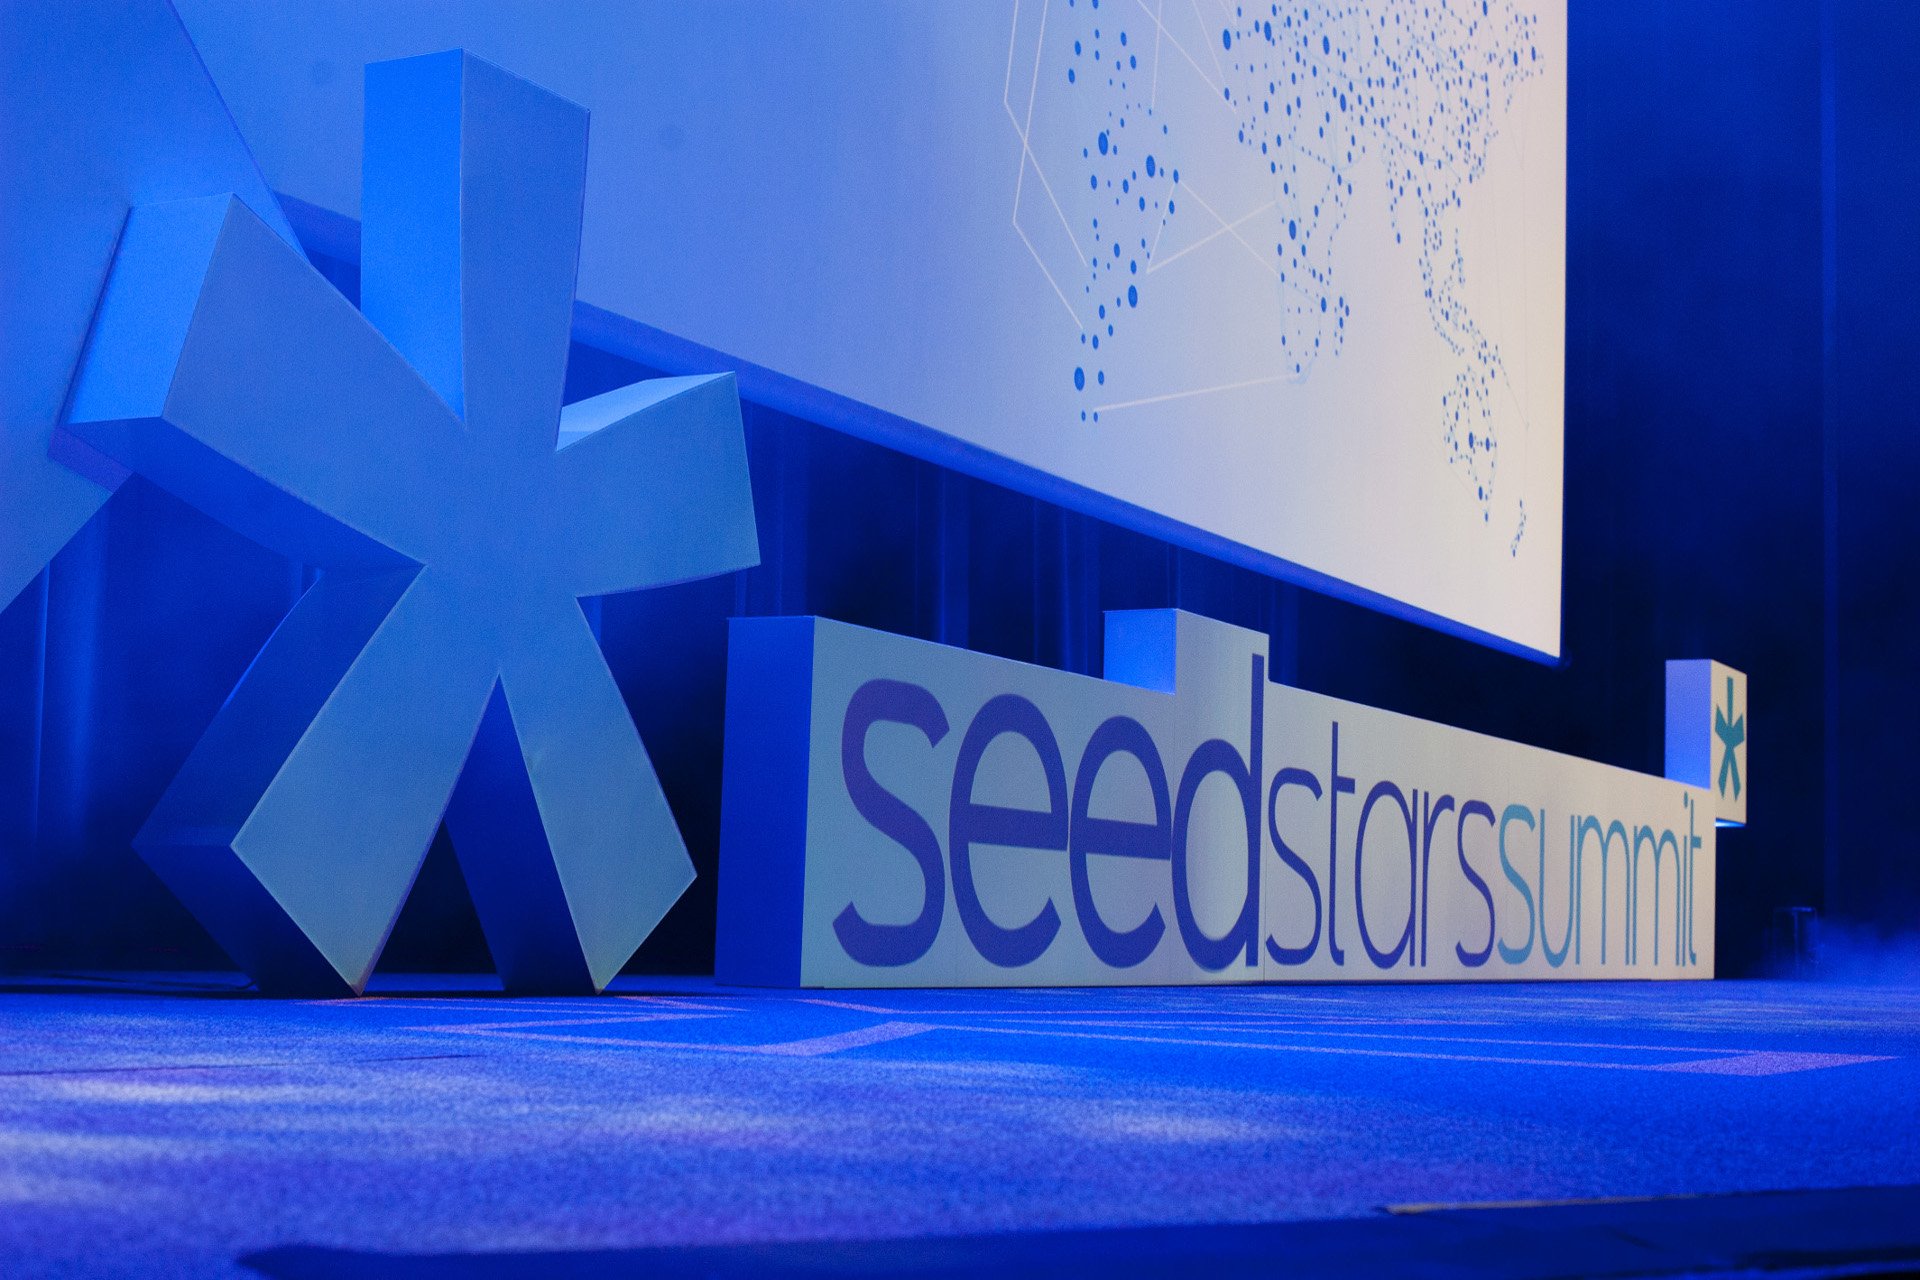 Seedstars world will be in Nairobi on Nov 10th